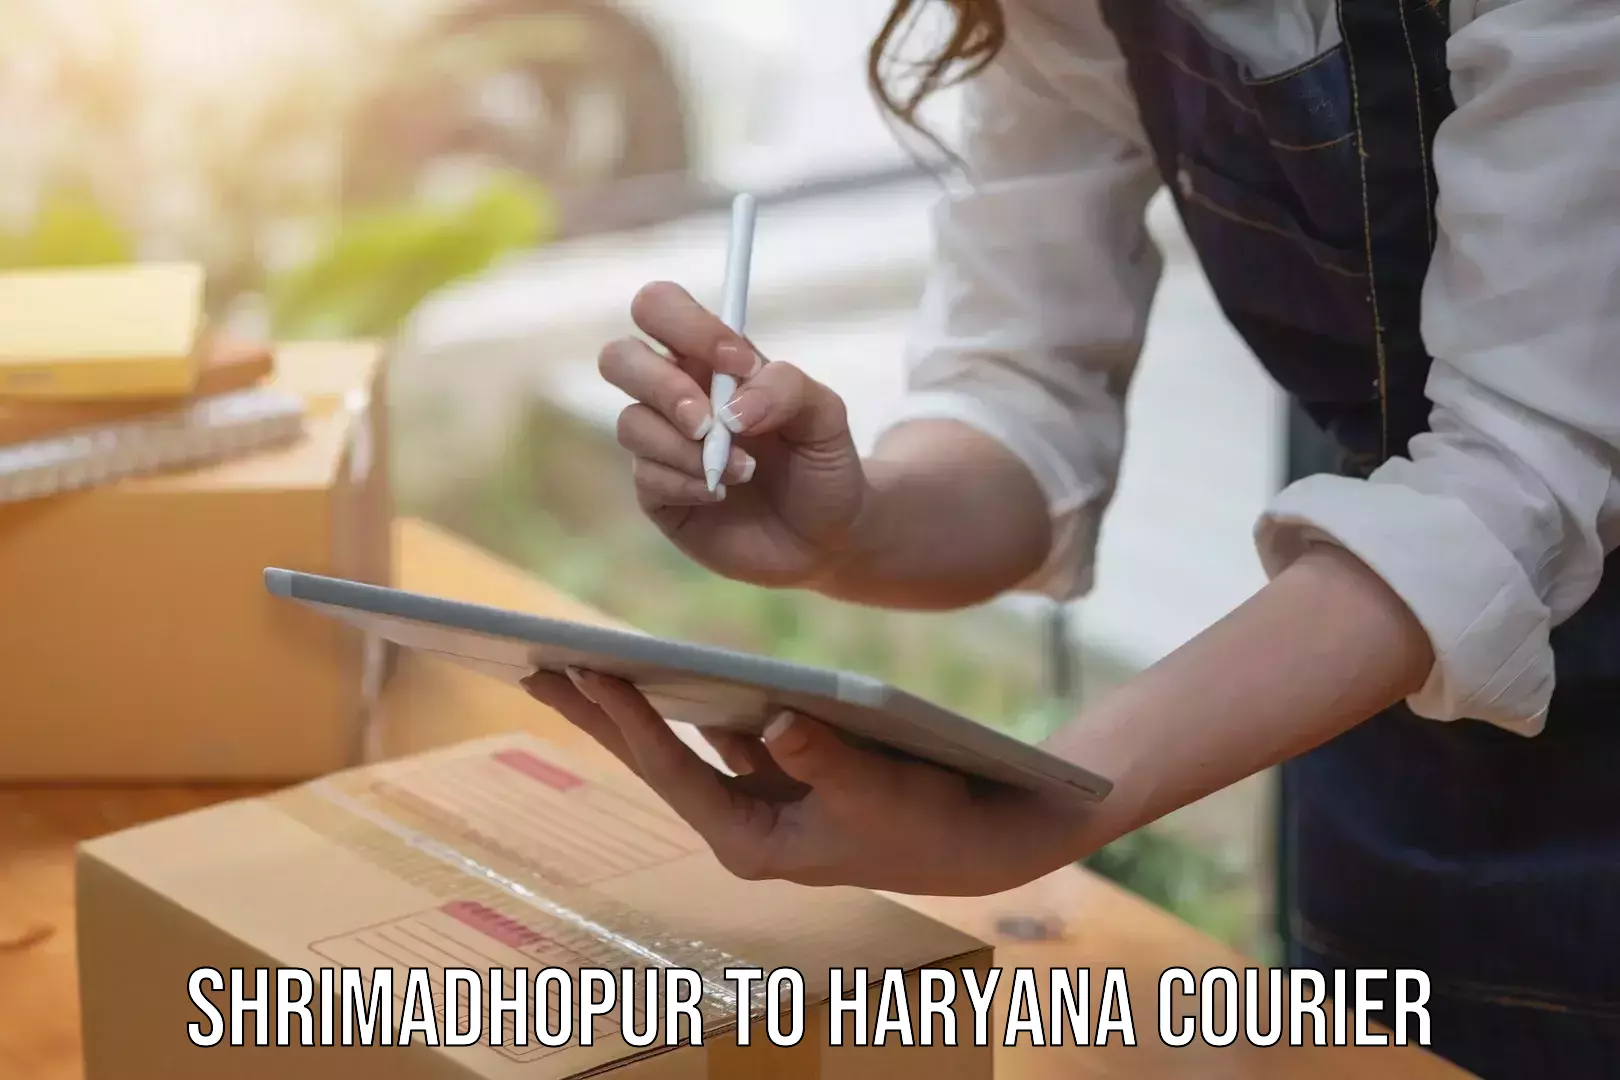 Express shipping Shrimadhopur to Chaudhary Charan Singh Haryana Agricultural University Hisar